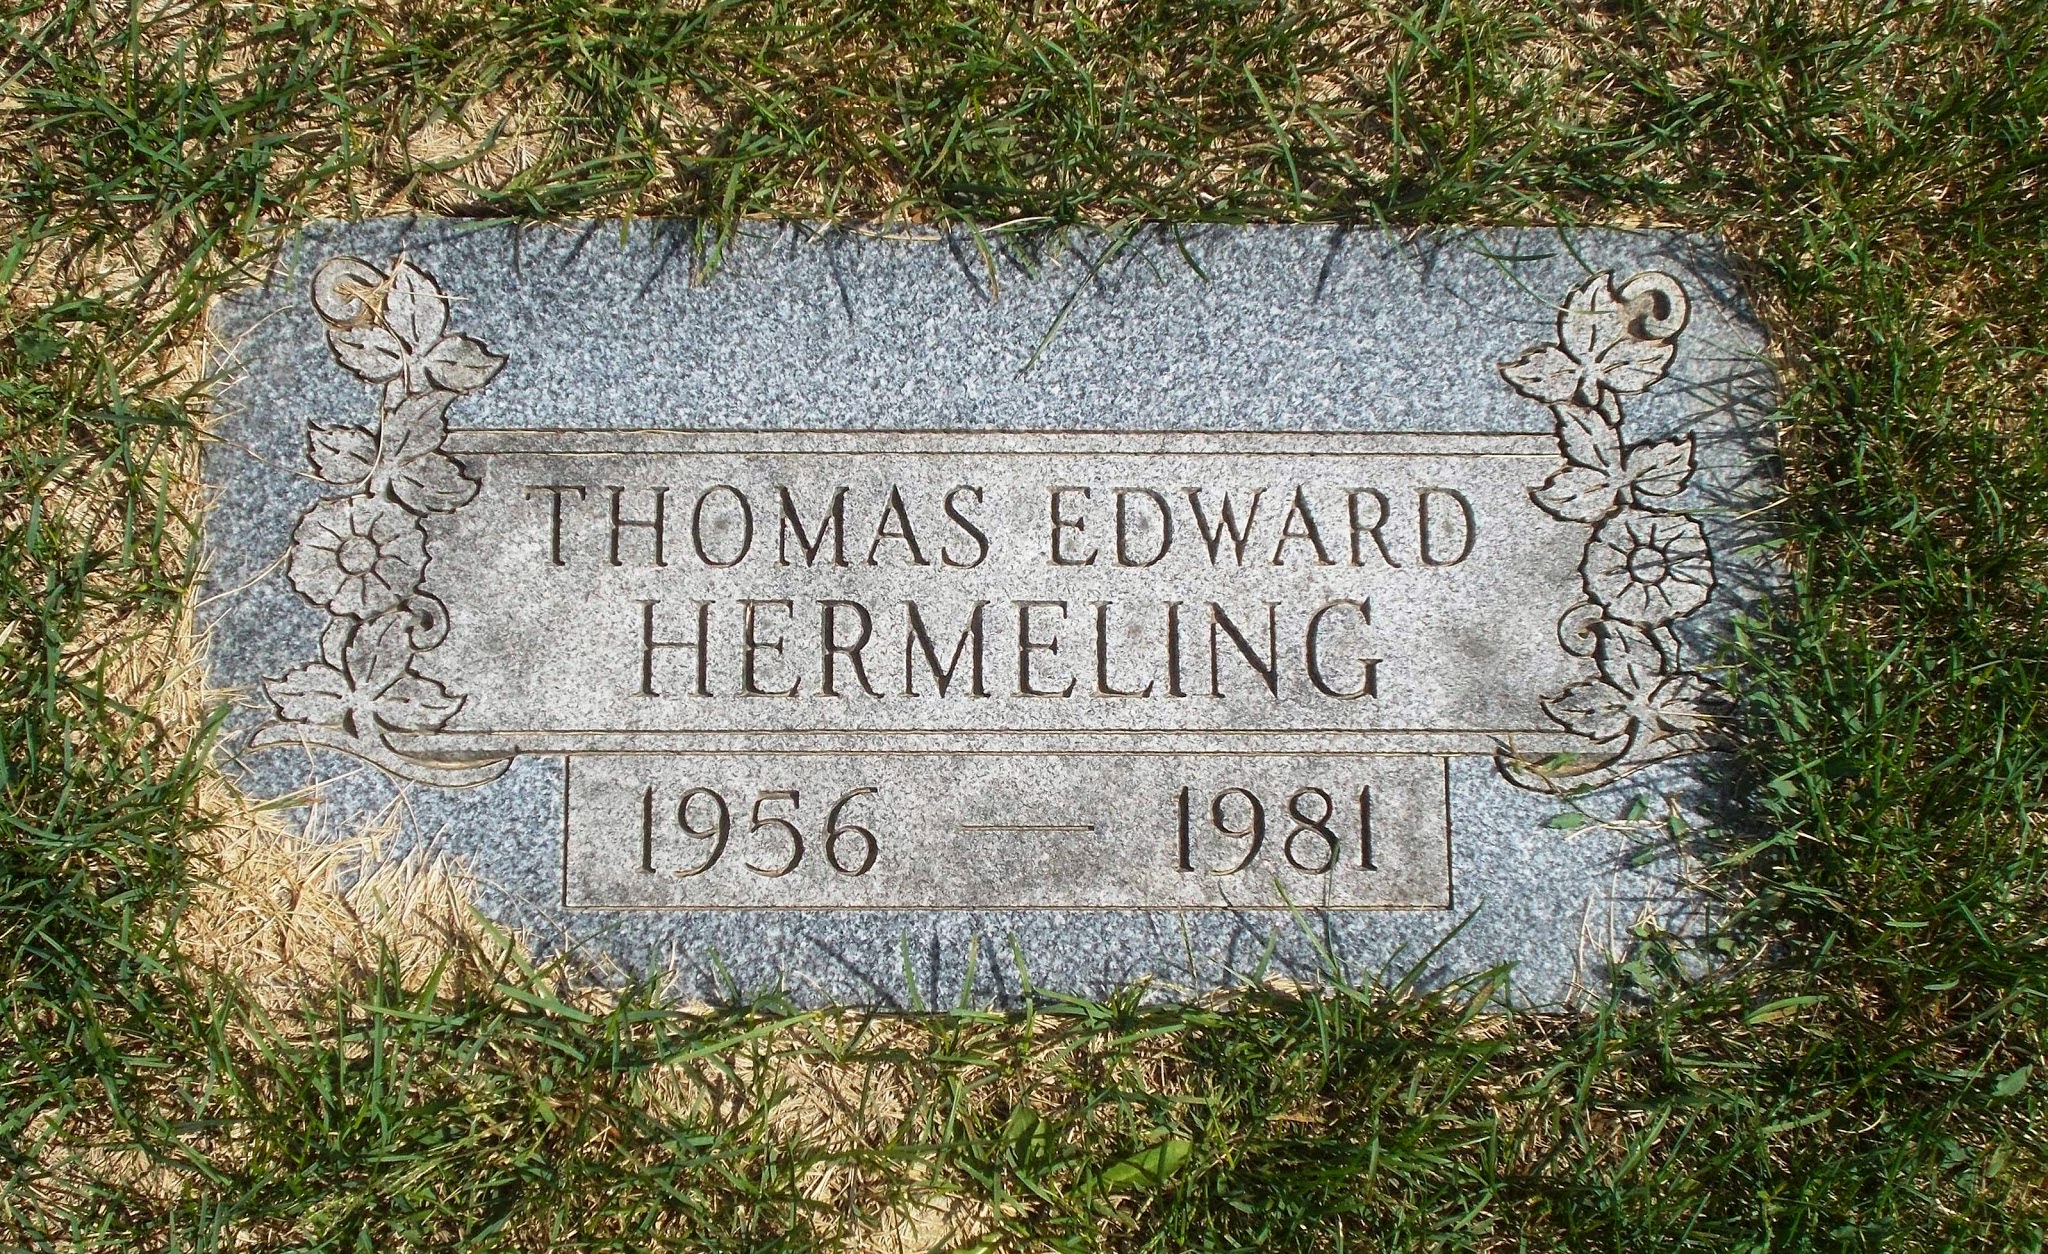 Thomas Edward Hermeling